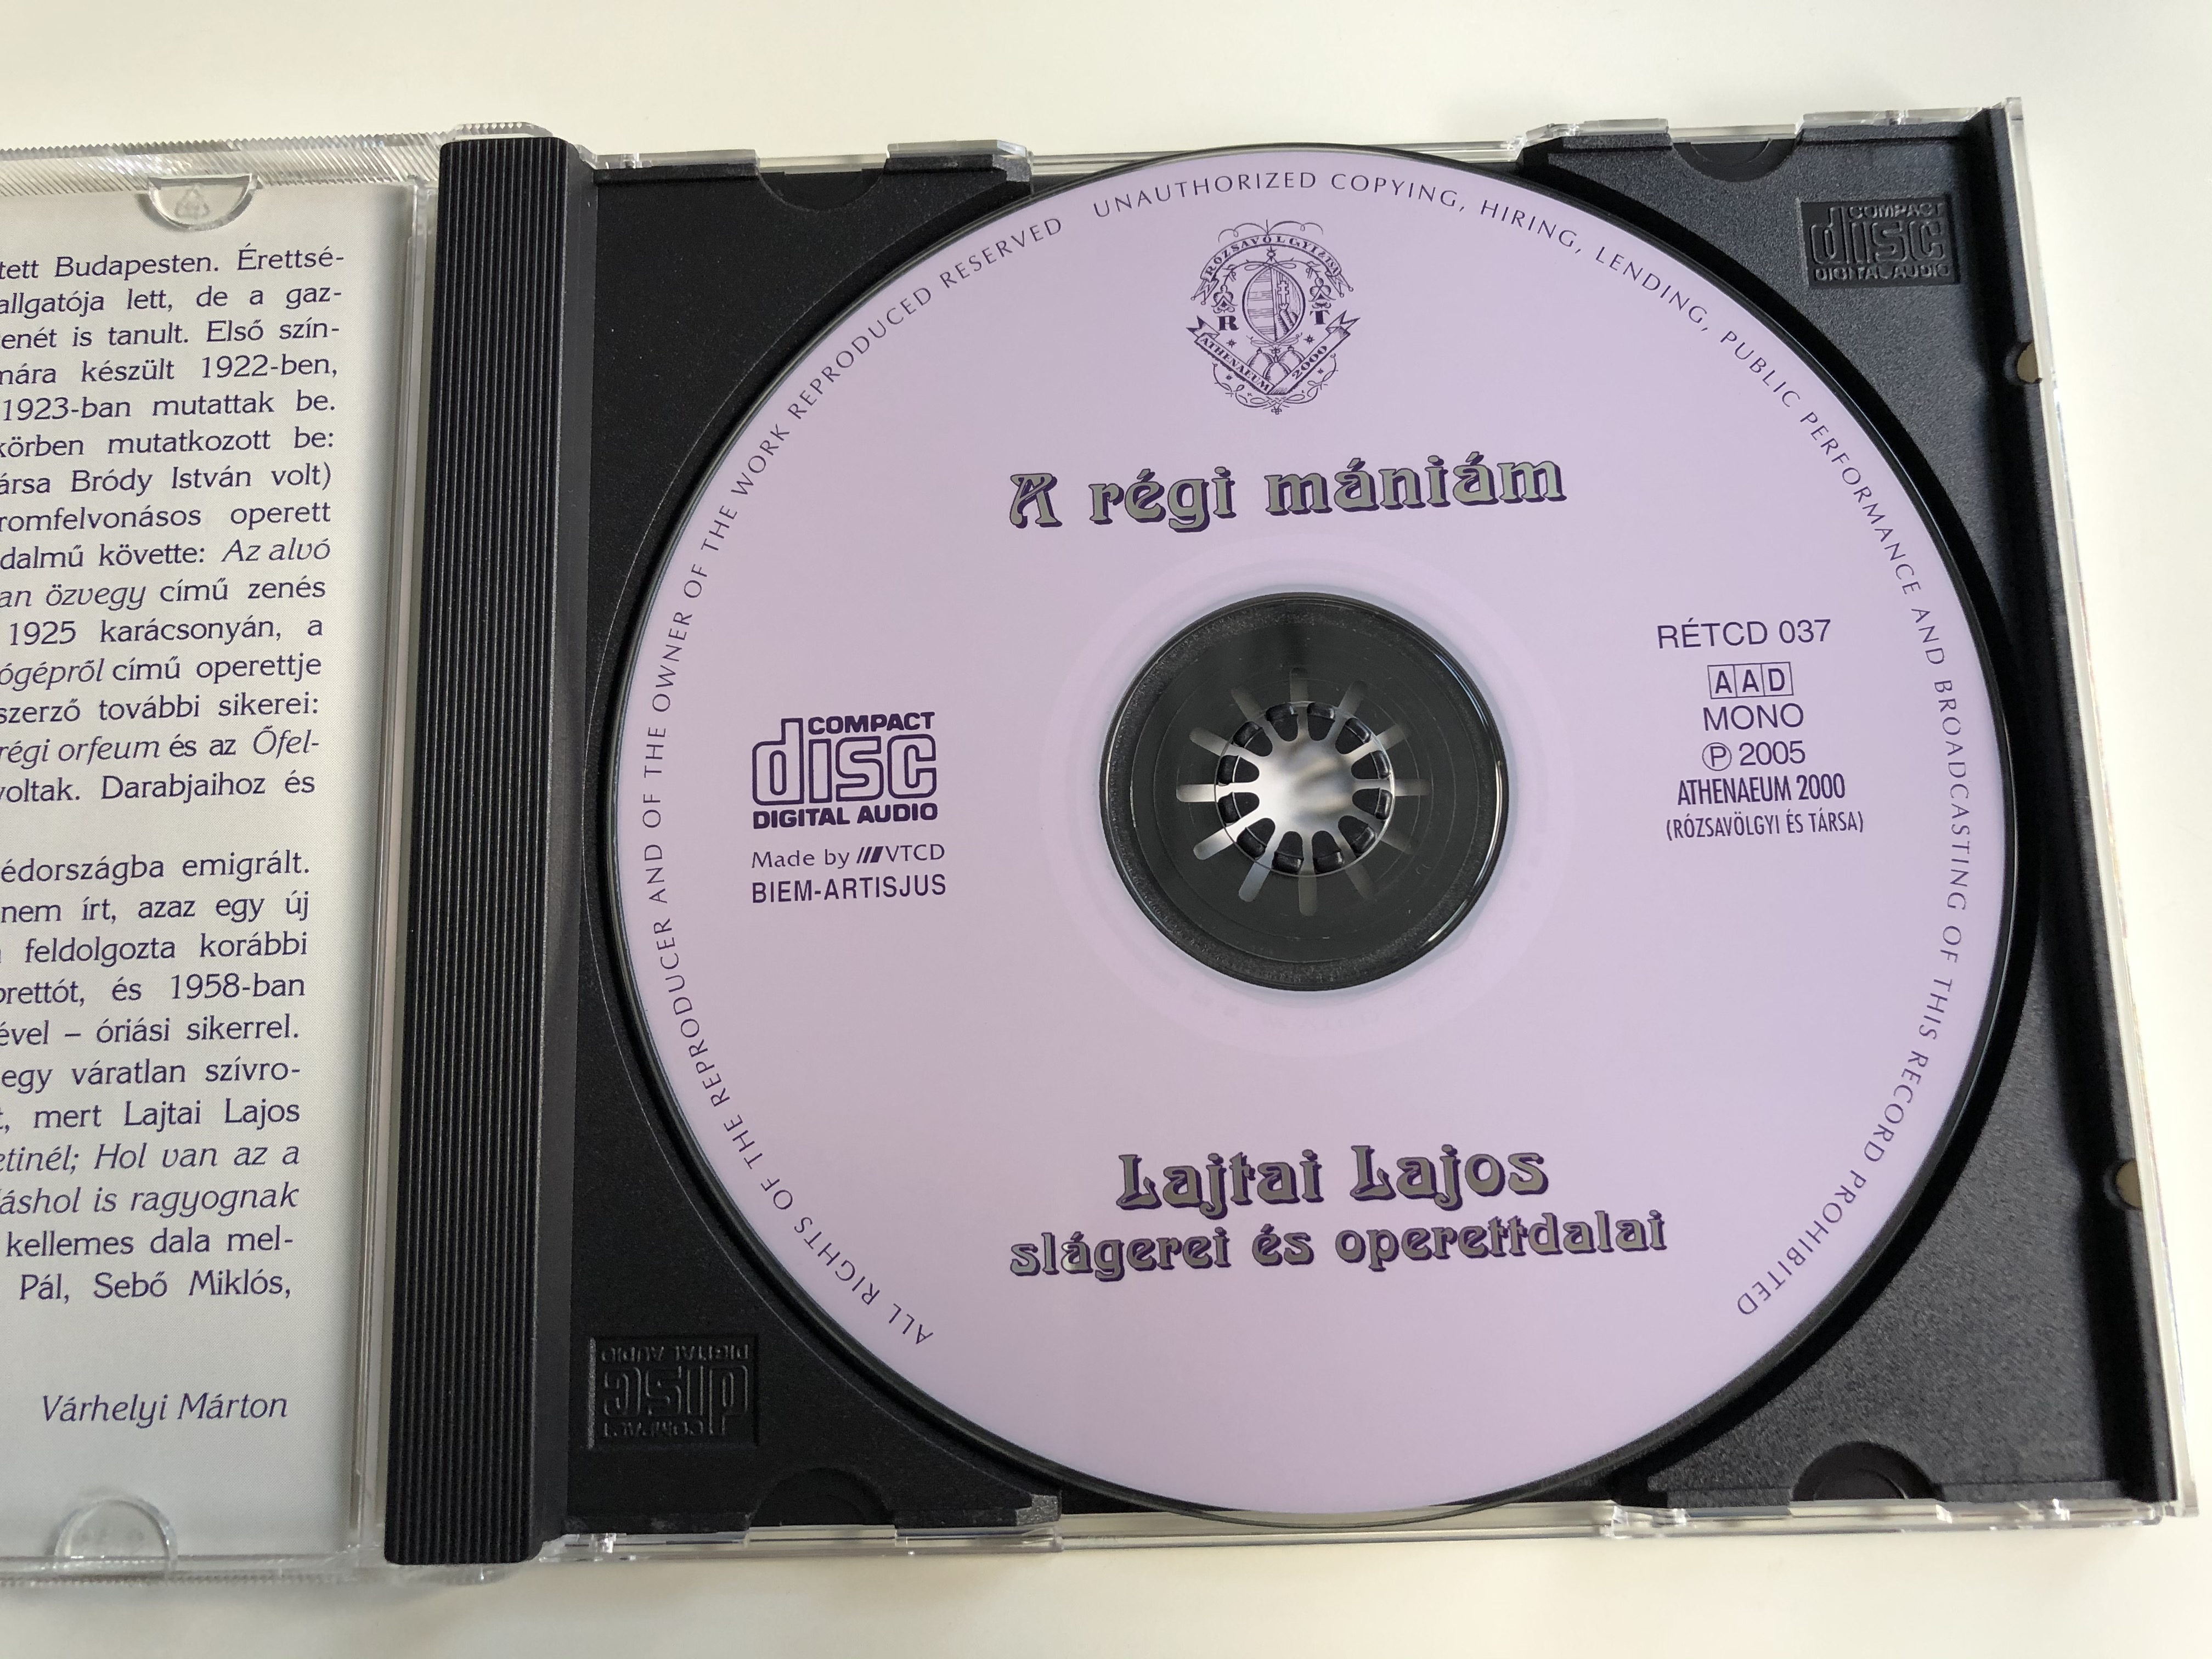 a-r-gi-m-ni-m-lajtai-lajos-sl-gerei-s-operettdalai-r-zsav-lgyi-s-t-rsa-audio-cd-2005-mono-r-tcd-37-5-.jpg